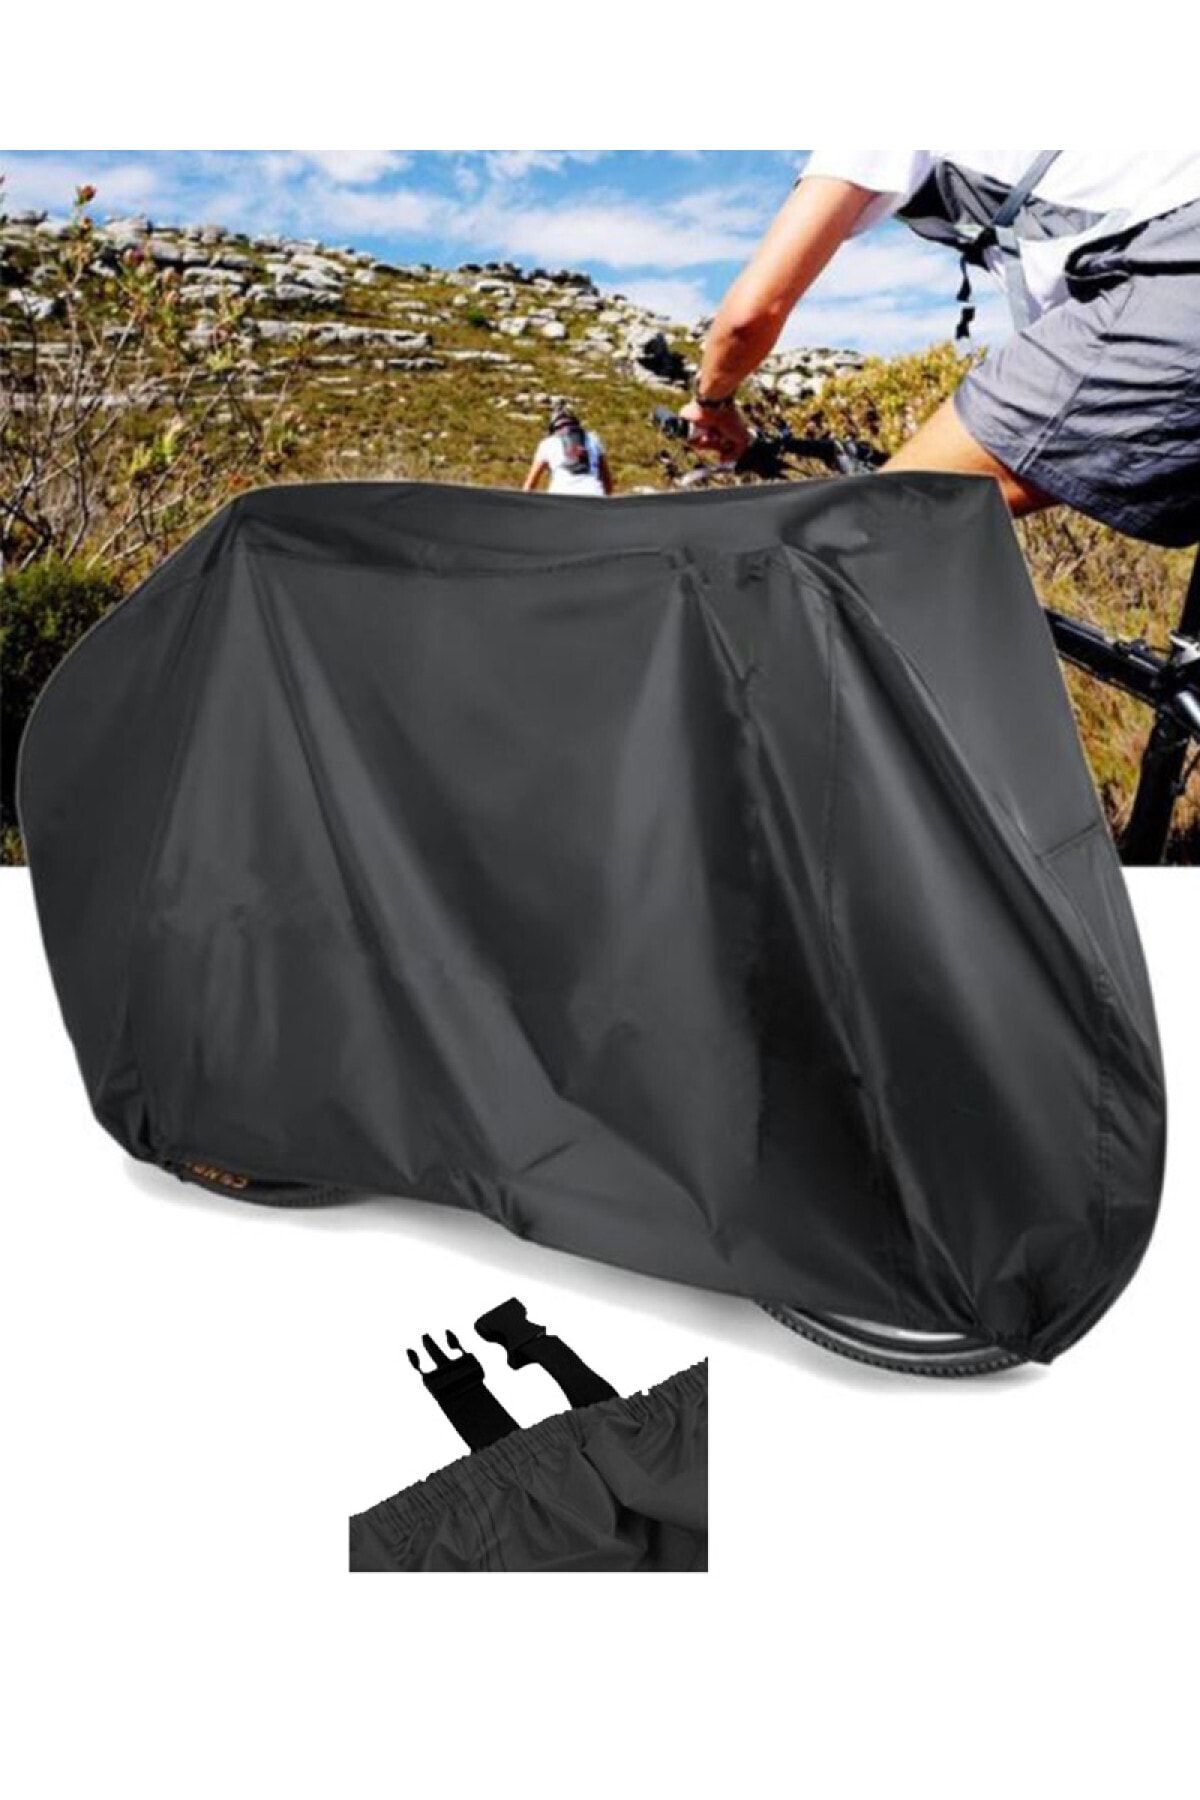 CoverPlus Salcano Bisiklet Brandası Su Geçirmez Bisiklet Örtüsü - Siyah